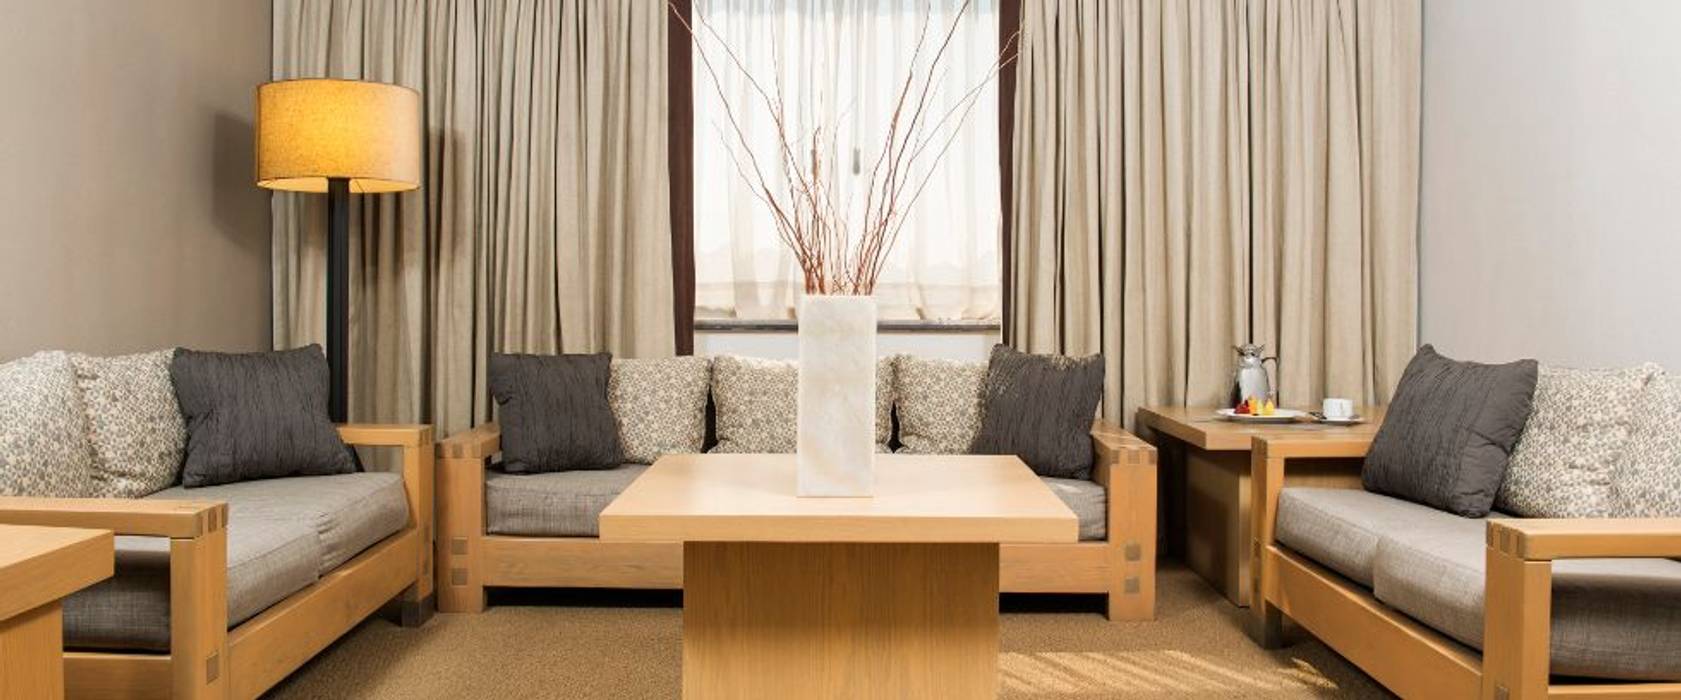 Hotel Galería Plaza Reforma, Ciudad de México, México 2015 , Nua Colección Nua Colección Minimalist living room Textile Amber/Gold Sofas & armchairs